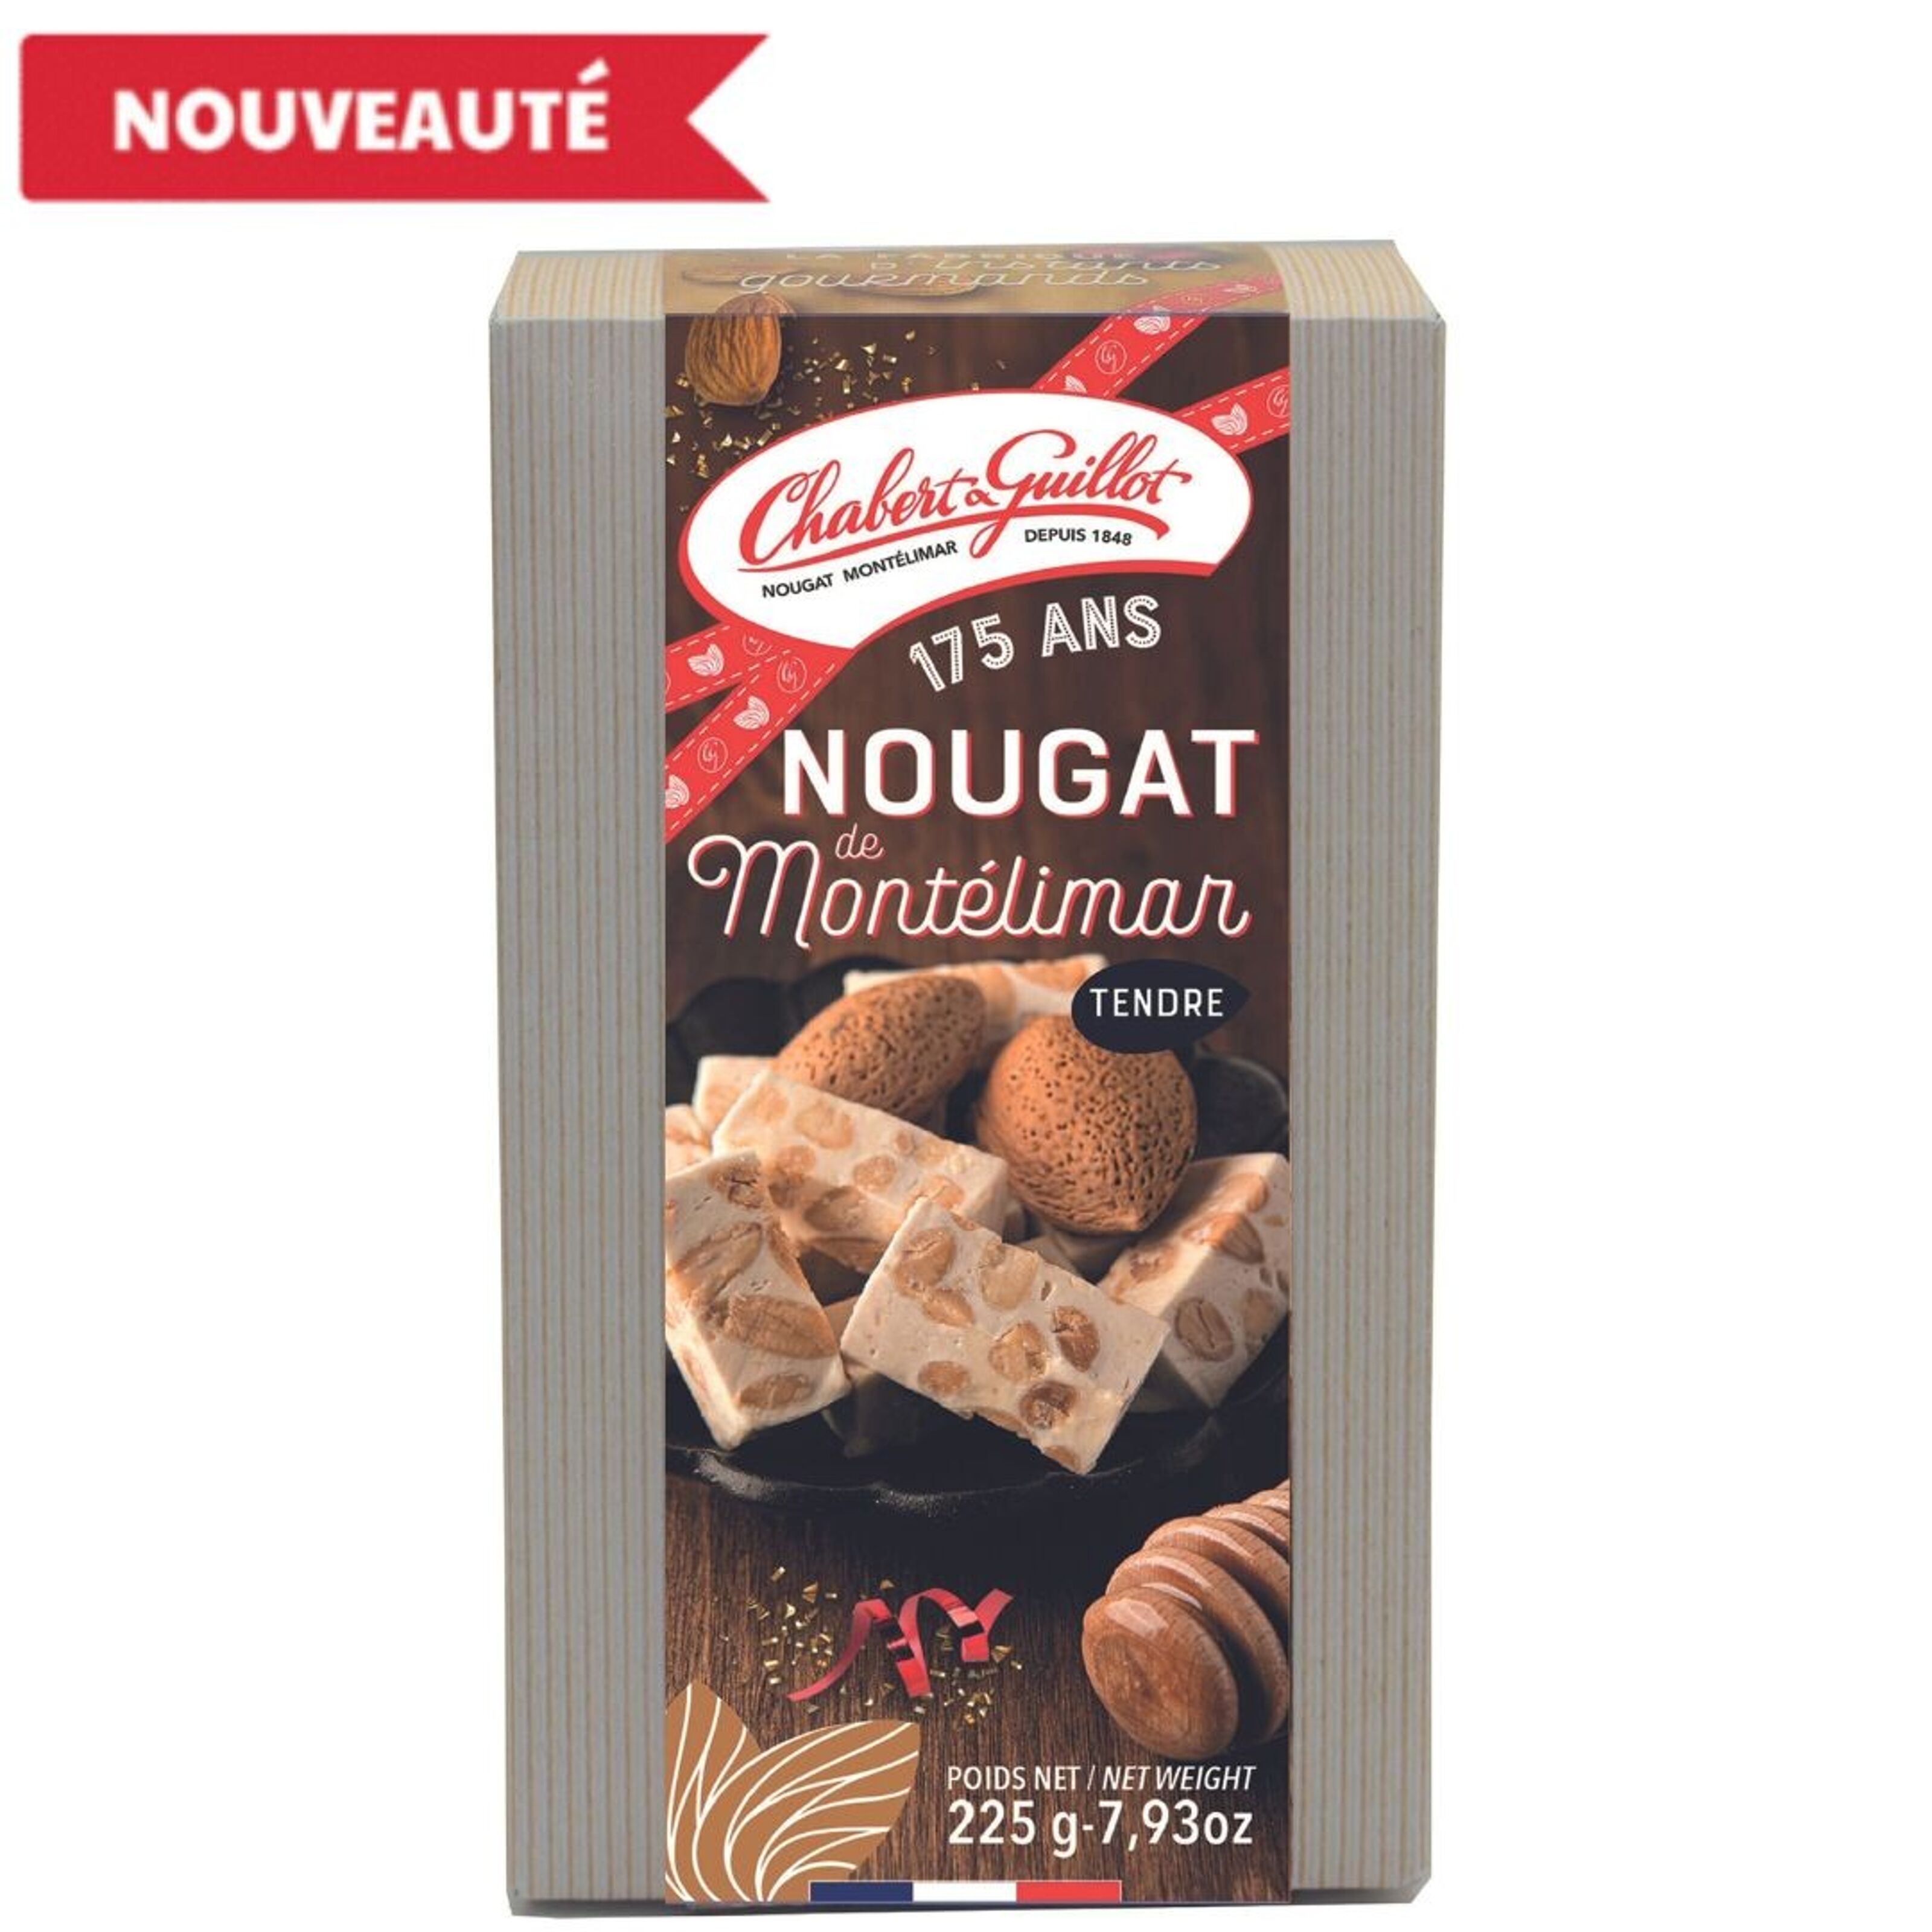 Borne N7 Nougat de Montélimar Chabert & Guillot